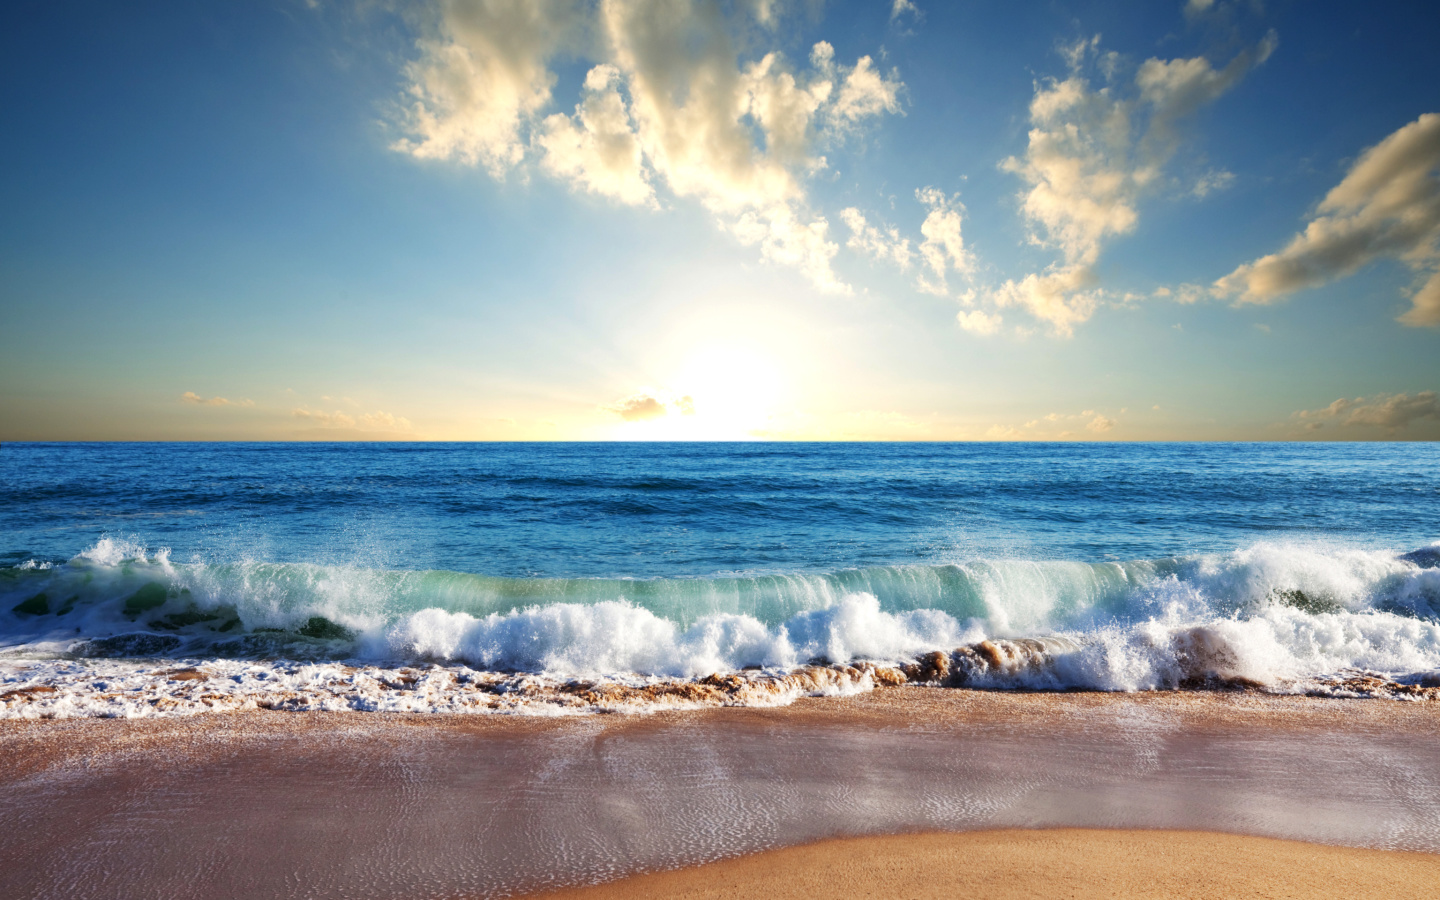 Обои Beach and Waves 1440x900